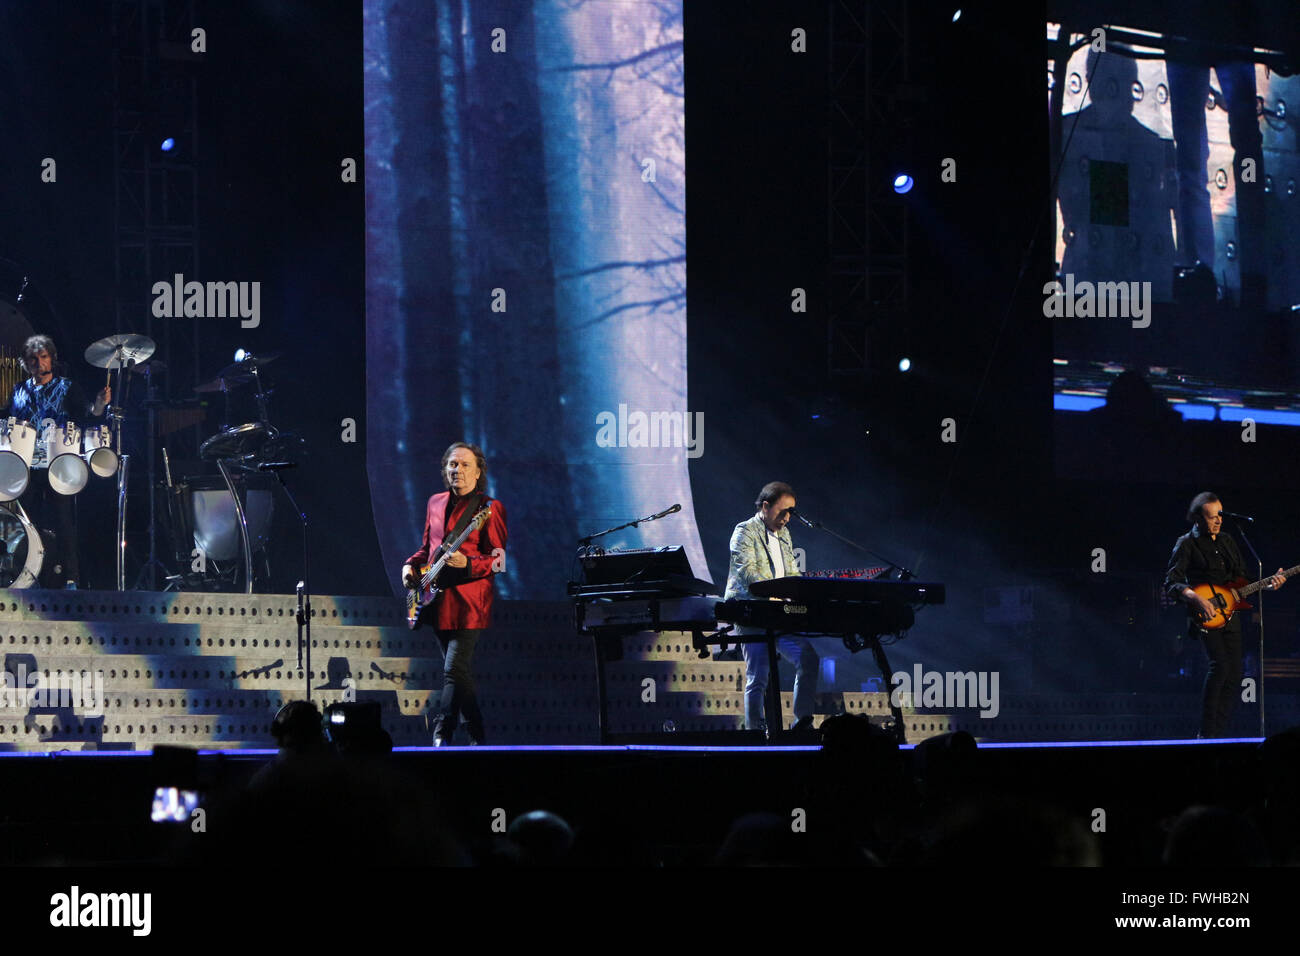 Mailand, Italien. 11. Juni 2016. Italienische Rockband Pooh auf der Bühne in Mailand. Bildnachweis: Luca Quadrio/Alamy Live-Nachrichten. Stockfoto